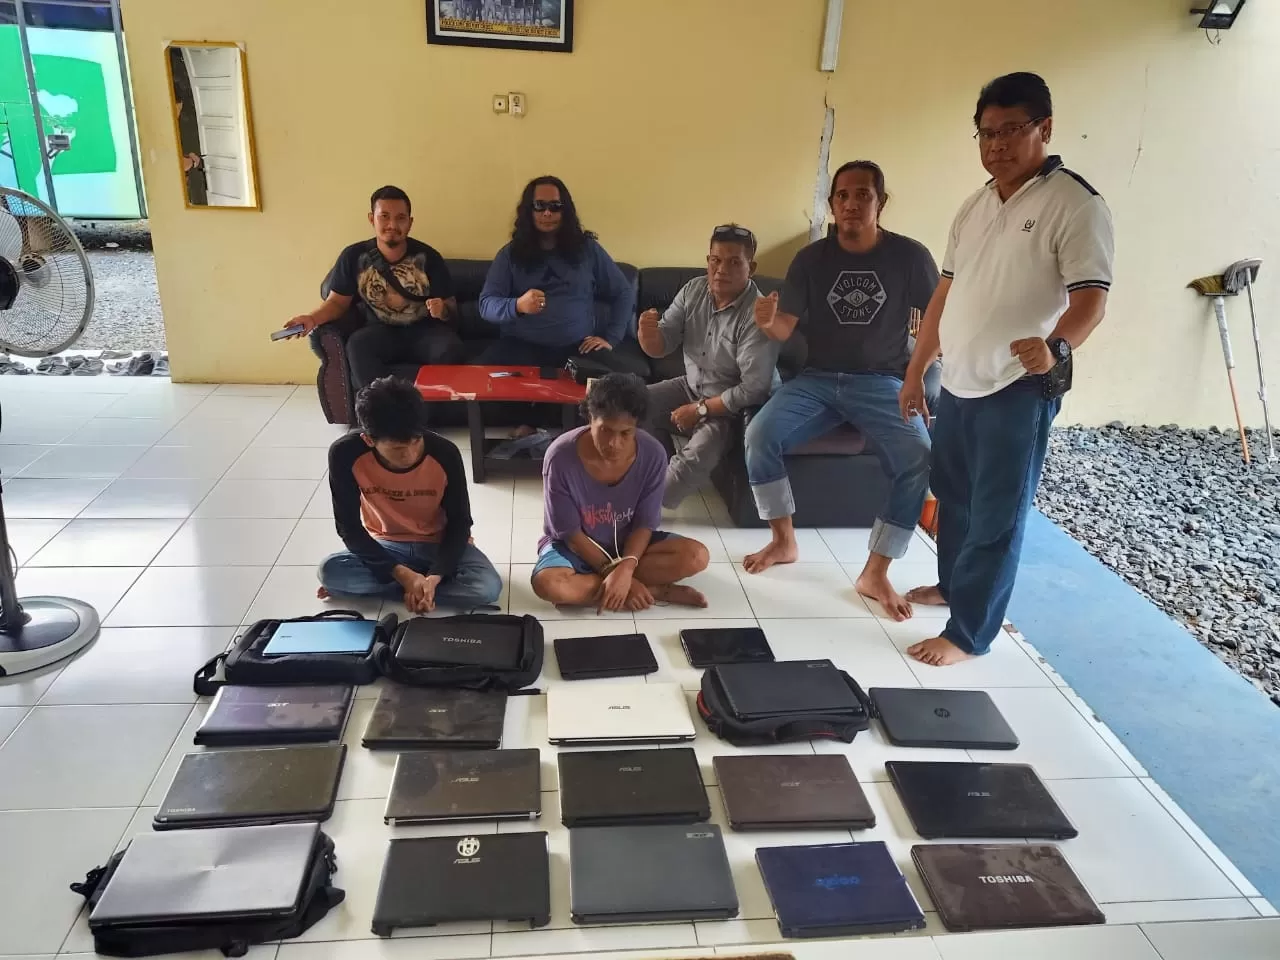 PULUHAN LAPTOP: Satuan Reskrim Polres Banjarbaru mengamankan dua tersangka pembobolan rumah lengkal beserta puluhan laptop hasil curian, Kamis (15/1). | Foto: Polres Banjarbaru for Radar Banjarmasin